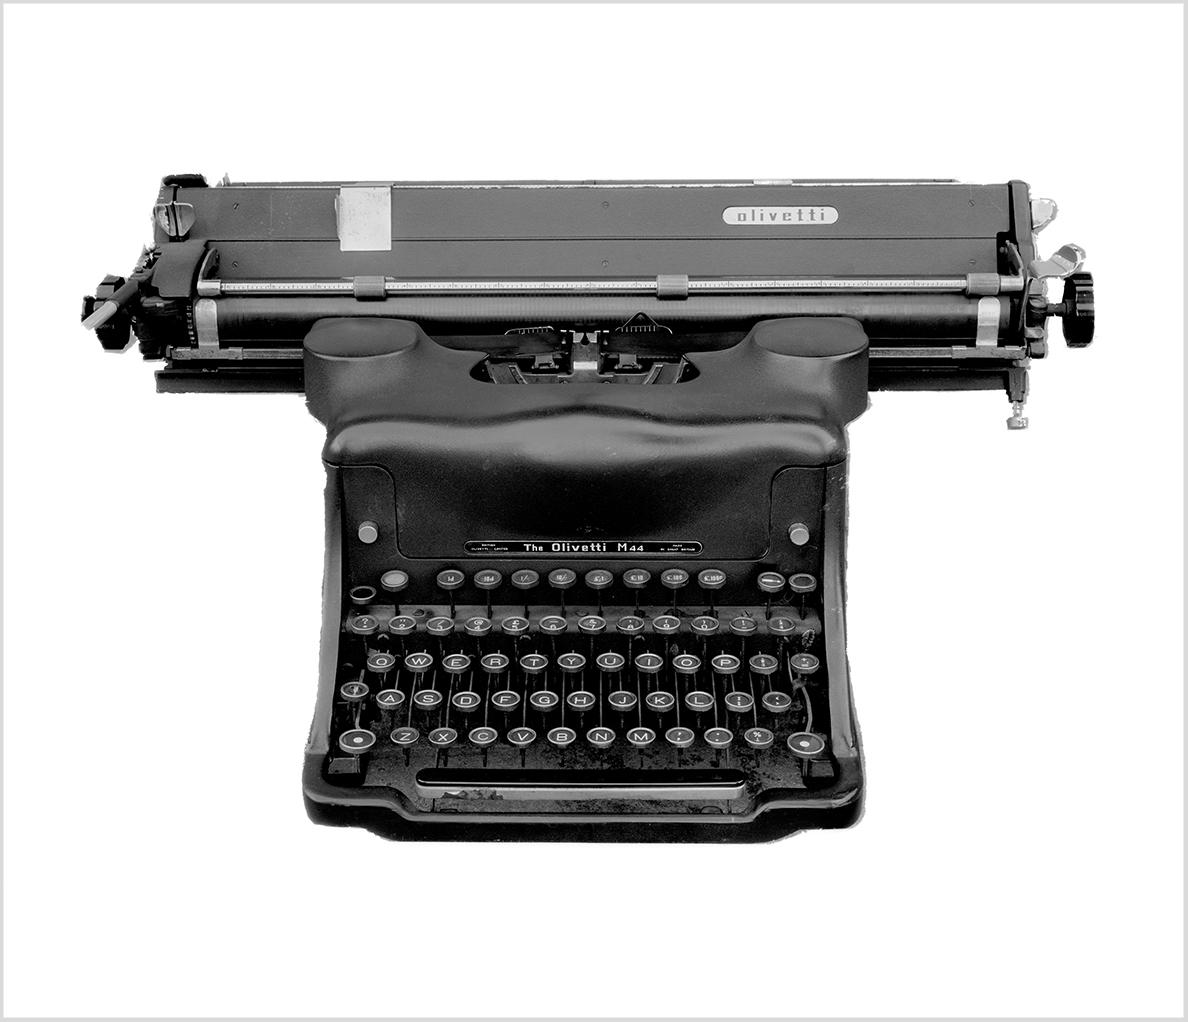 Still-Life Photograph Samuel Field - Orthochromatic Positive - Photographie en noir et blanc d'un machine à écrire